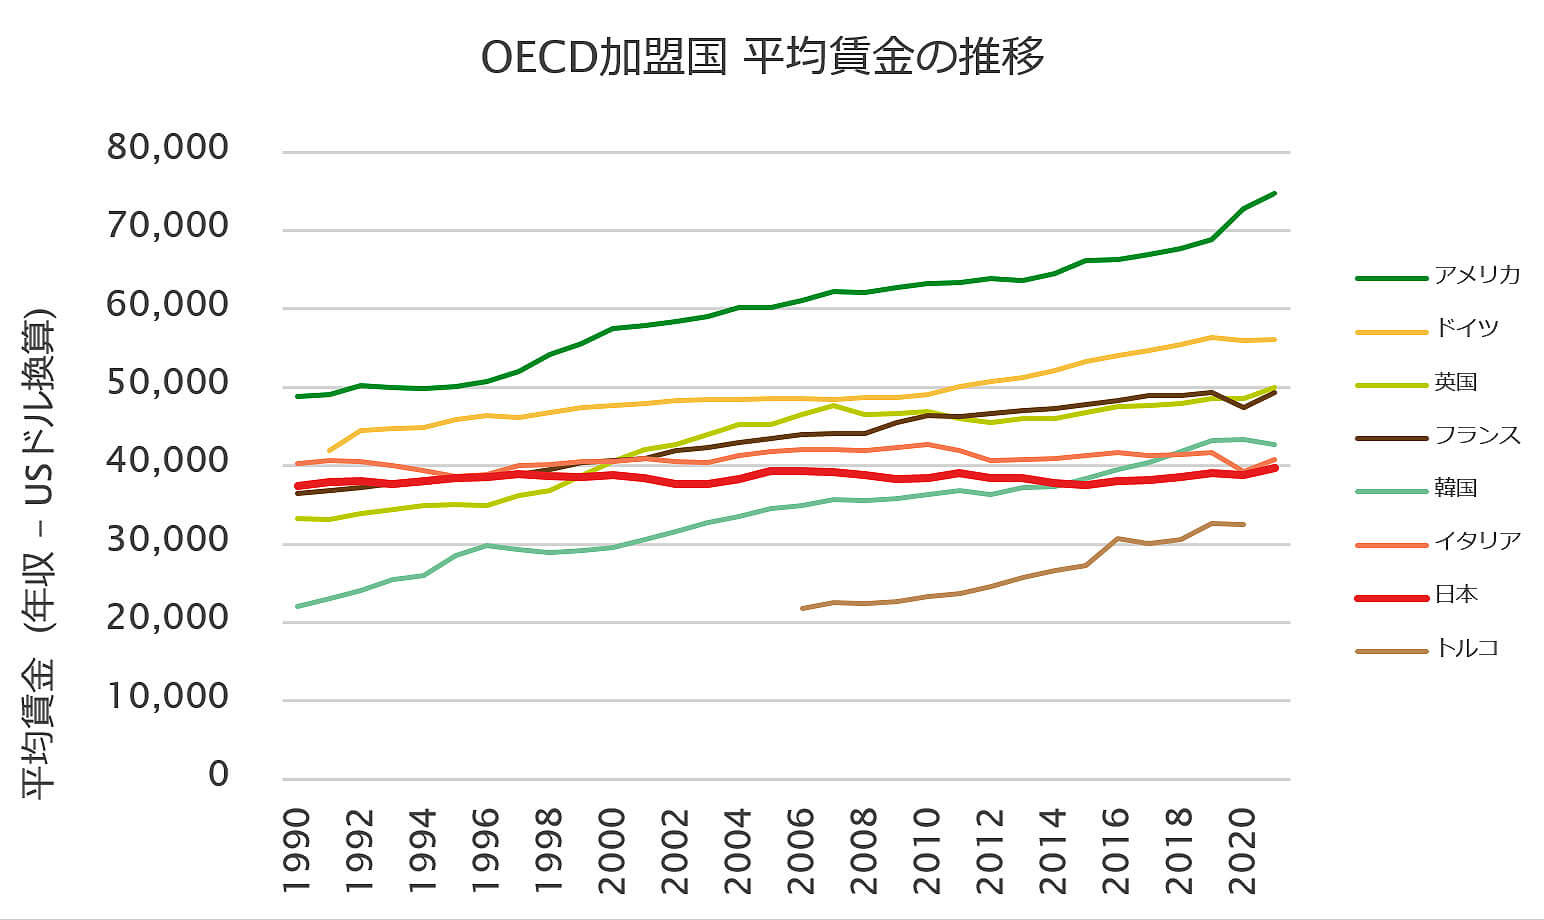 OECD加盟国 平均賃金の推移